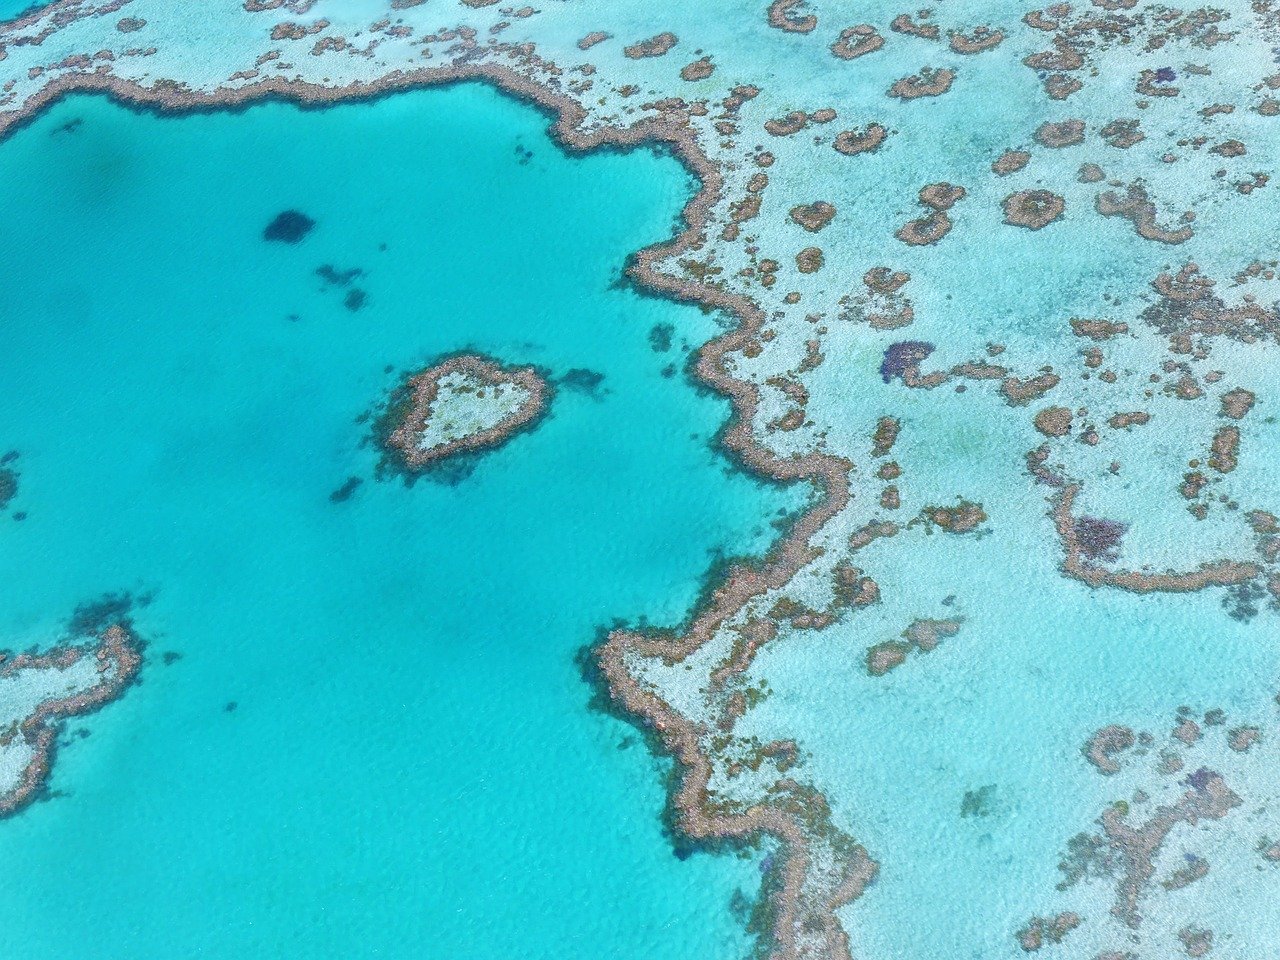 Great Barrier Reef Steckbrief & Bilder